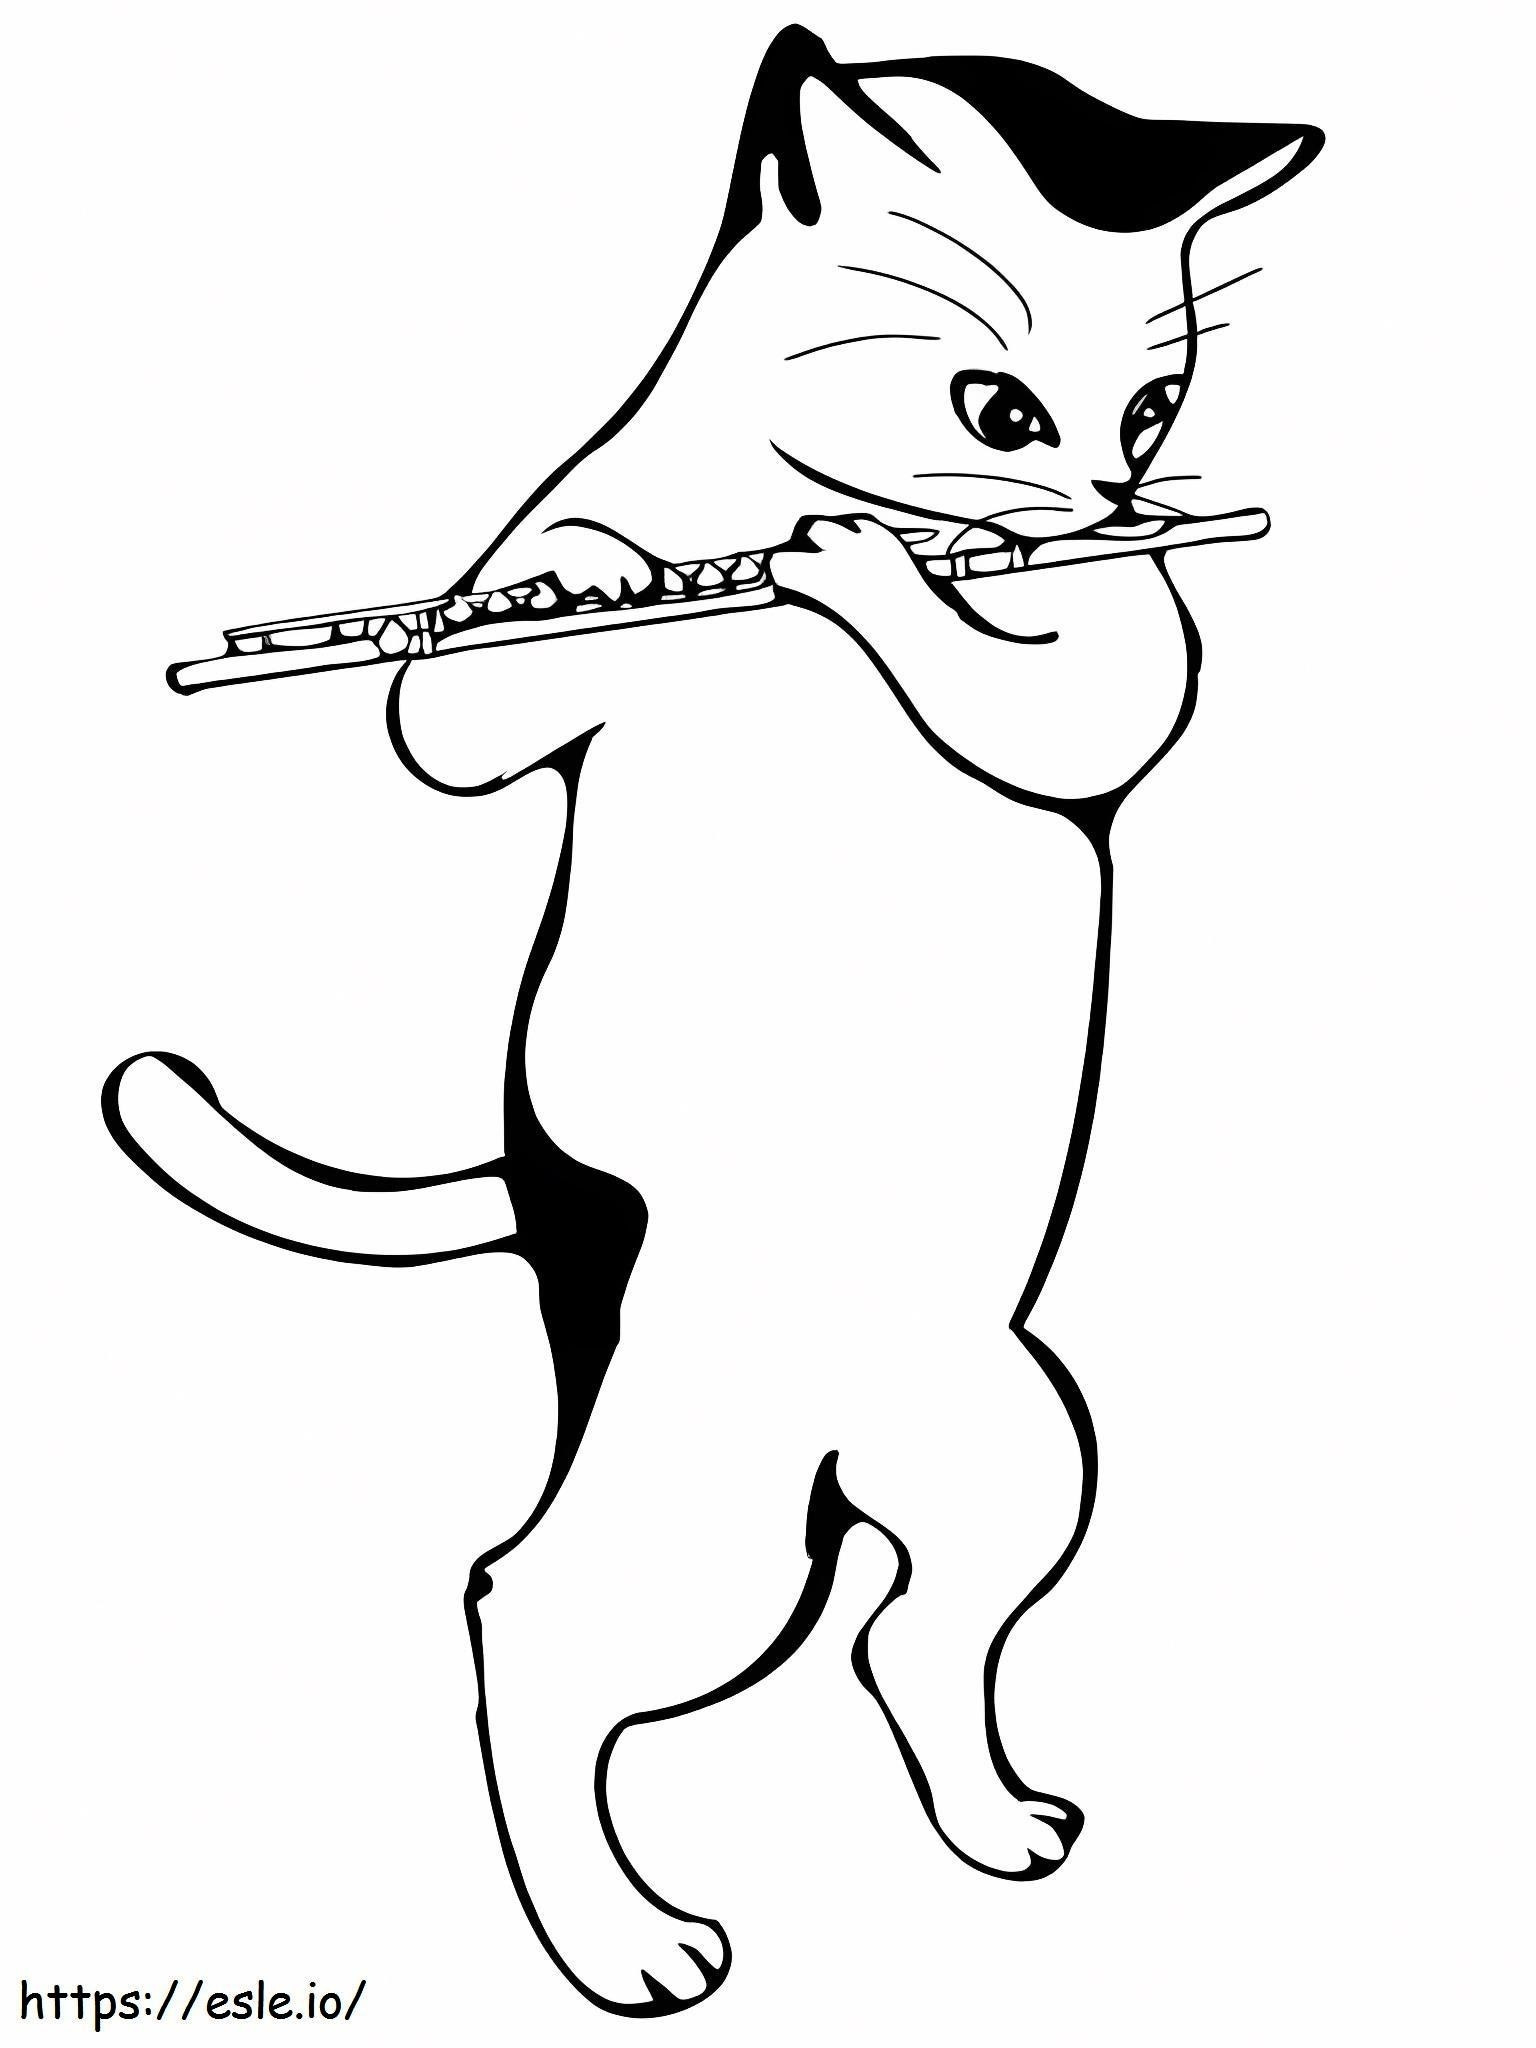 Flüt çalan kedi boyama